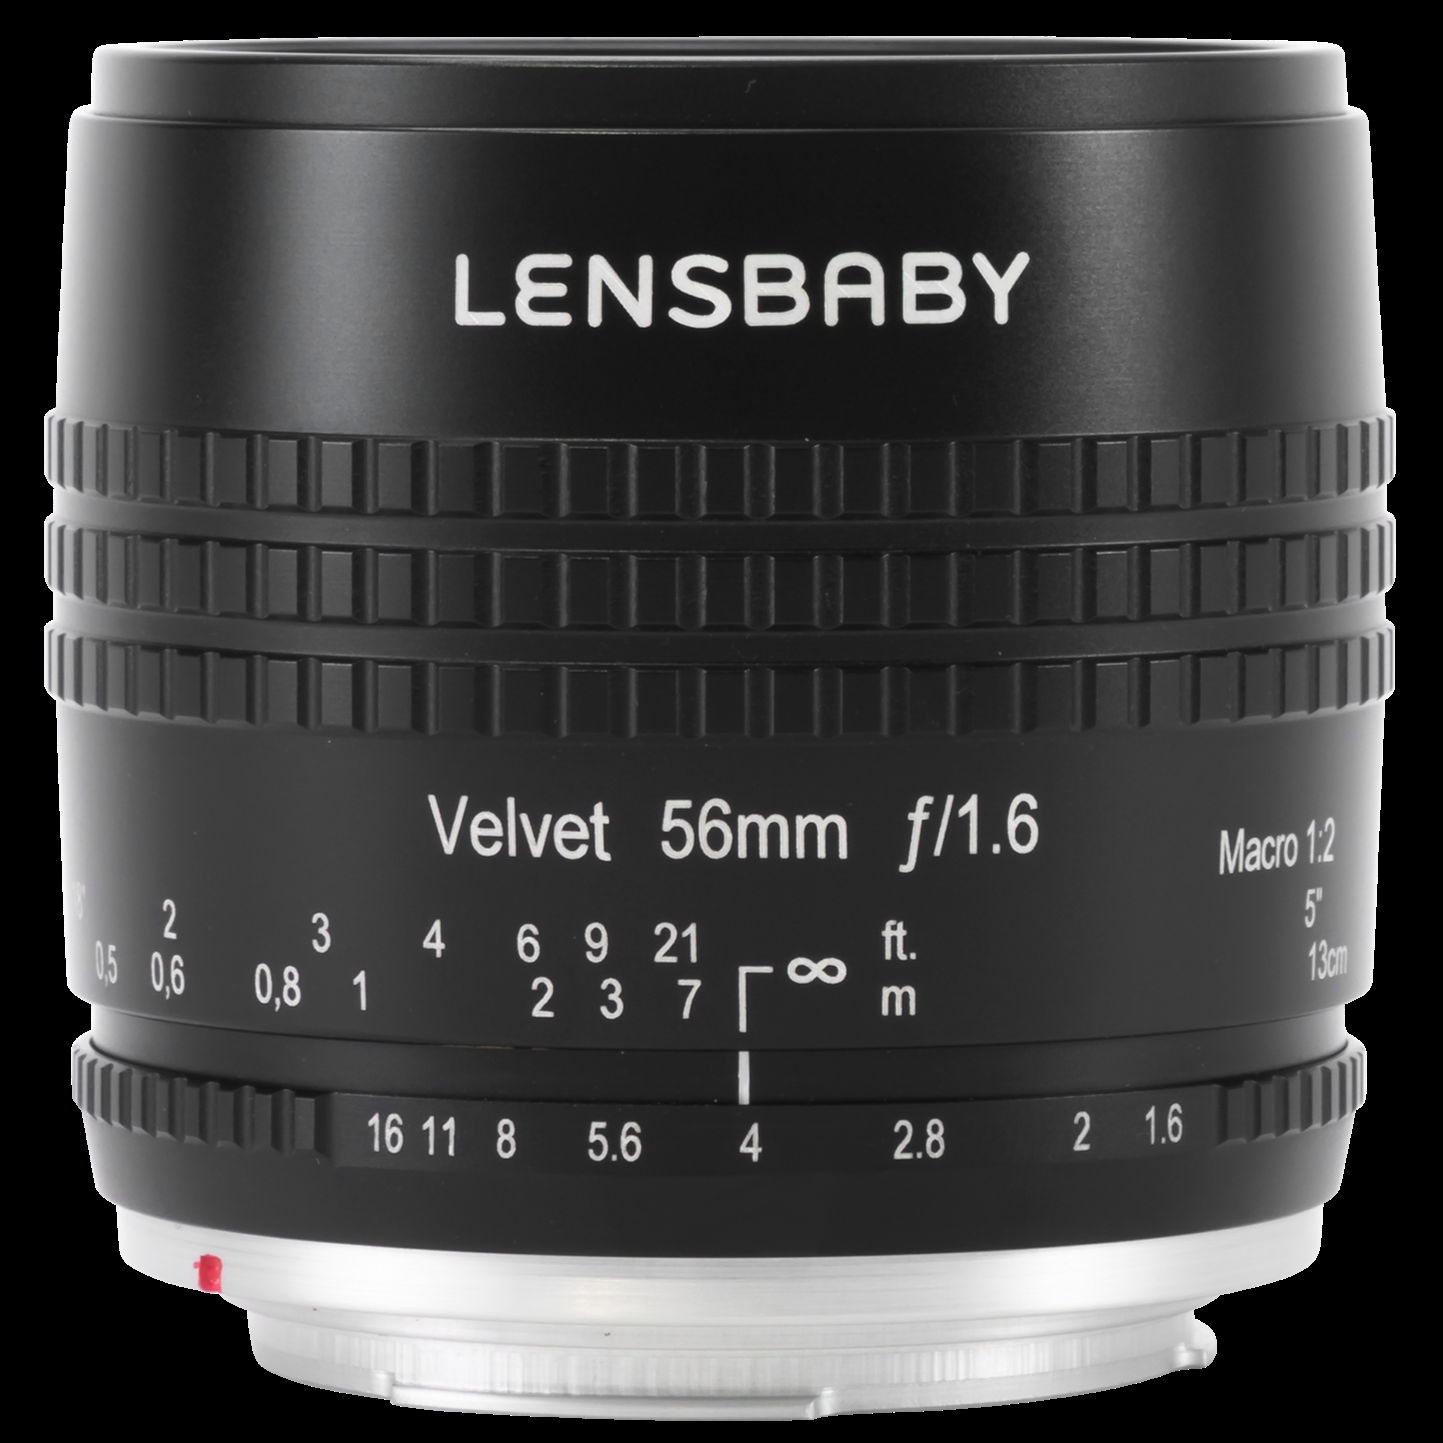 Lensbaby Velvet 56mm f/1.6 Lens for Pentax K